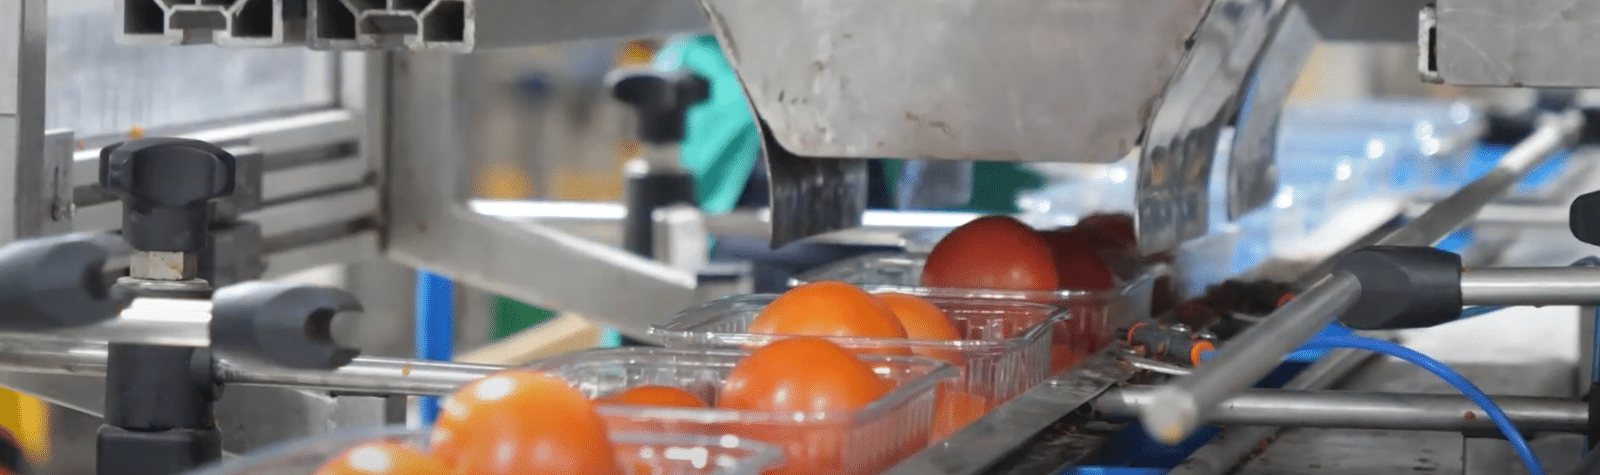 Innovación: Robots en centros de manipulado y envasado hortofrutícolas